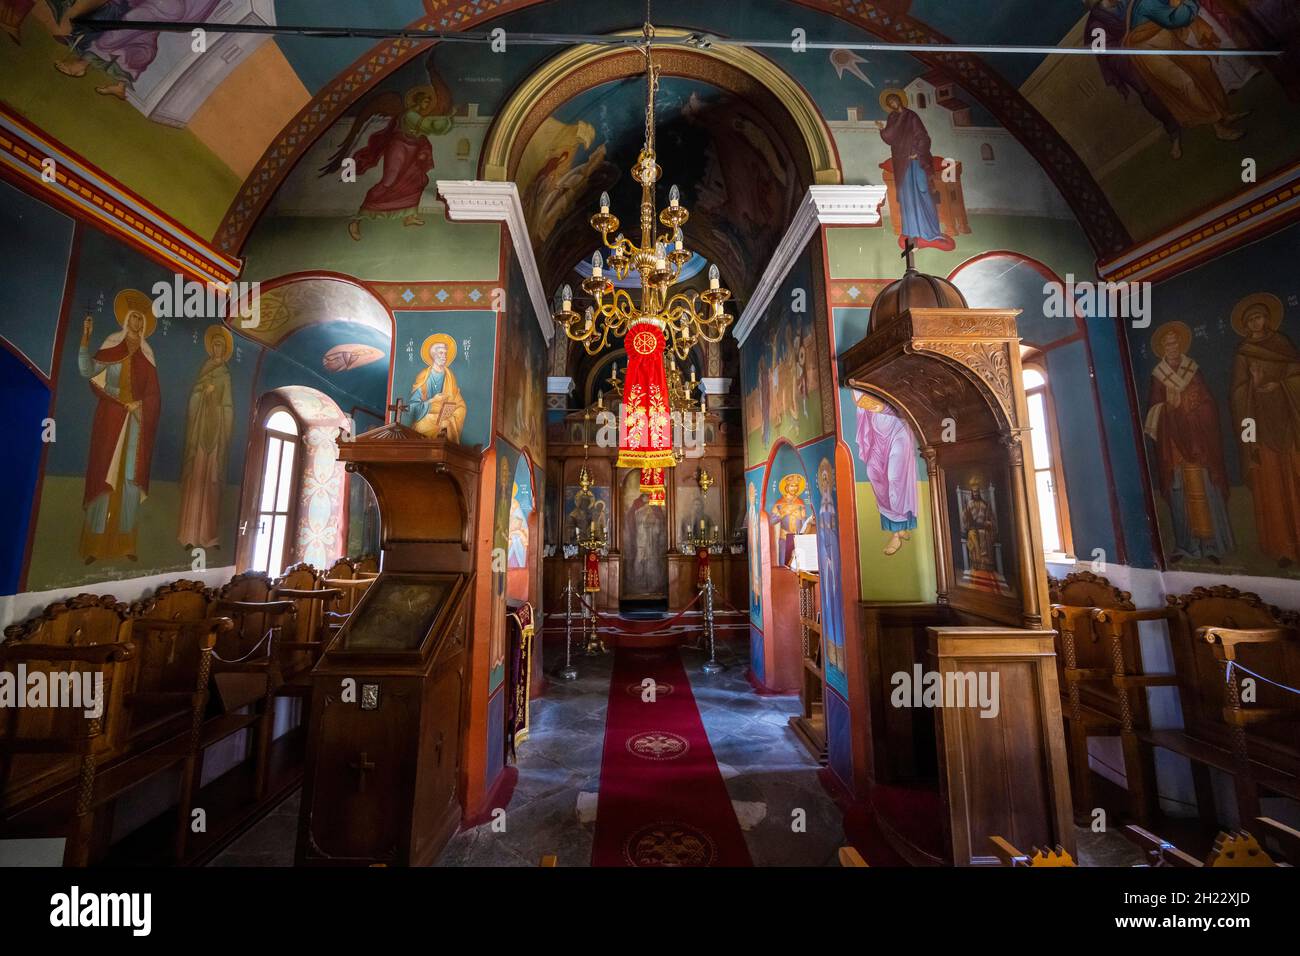 Interior of a church, Kimissis tis Theotokou, Greek Orthodox Church of Zia, Kos, Dodecanese, Greece Stock Photo